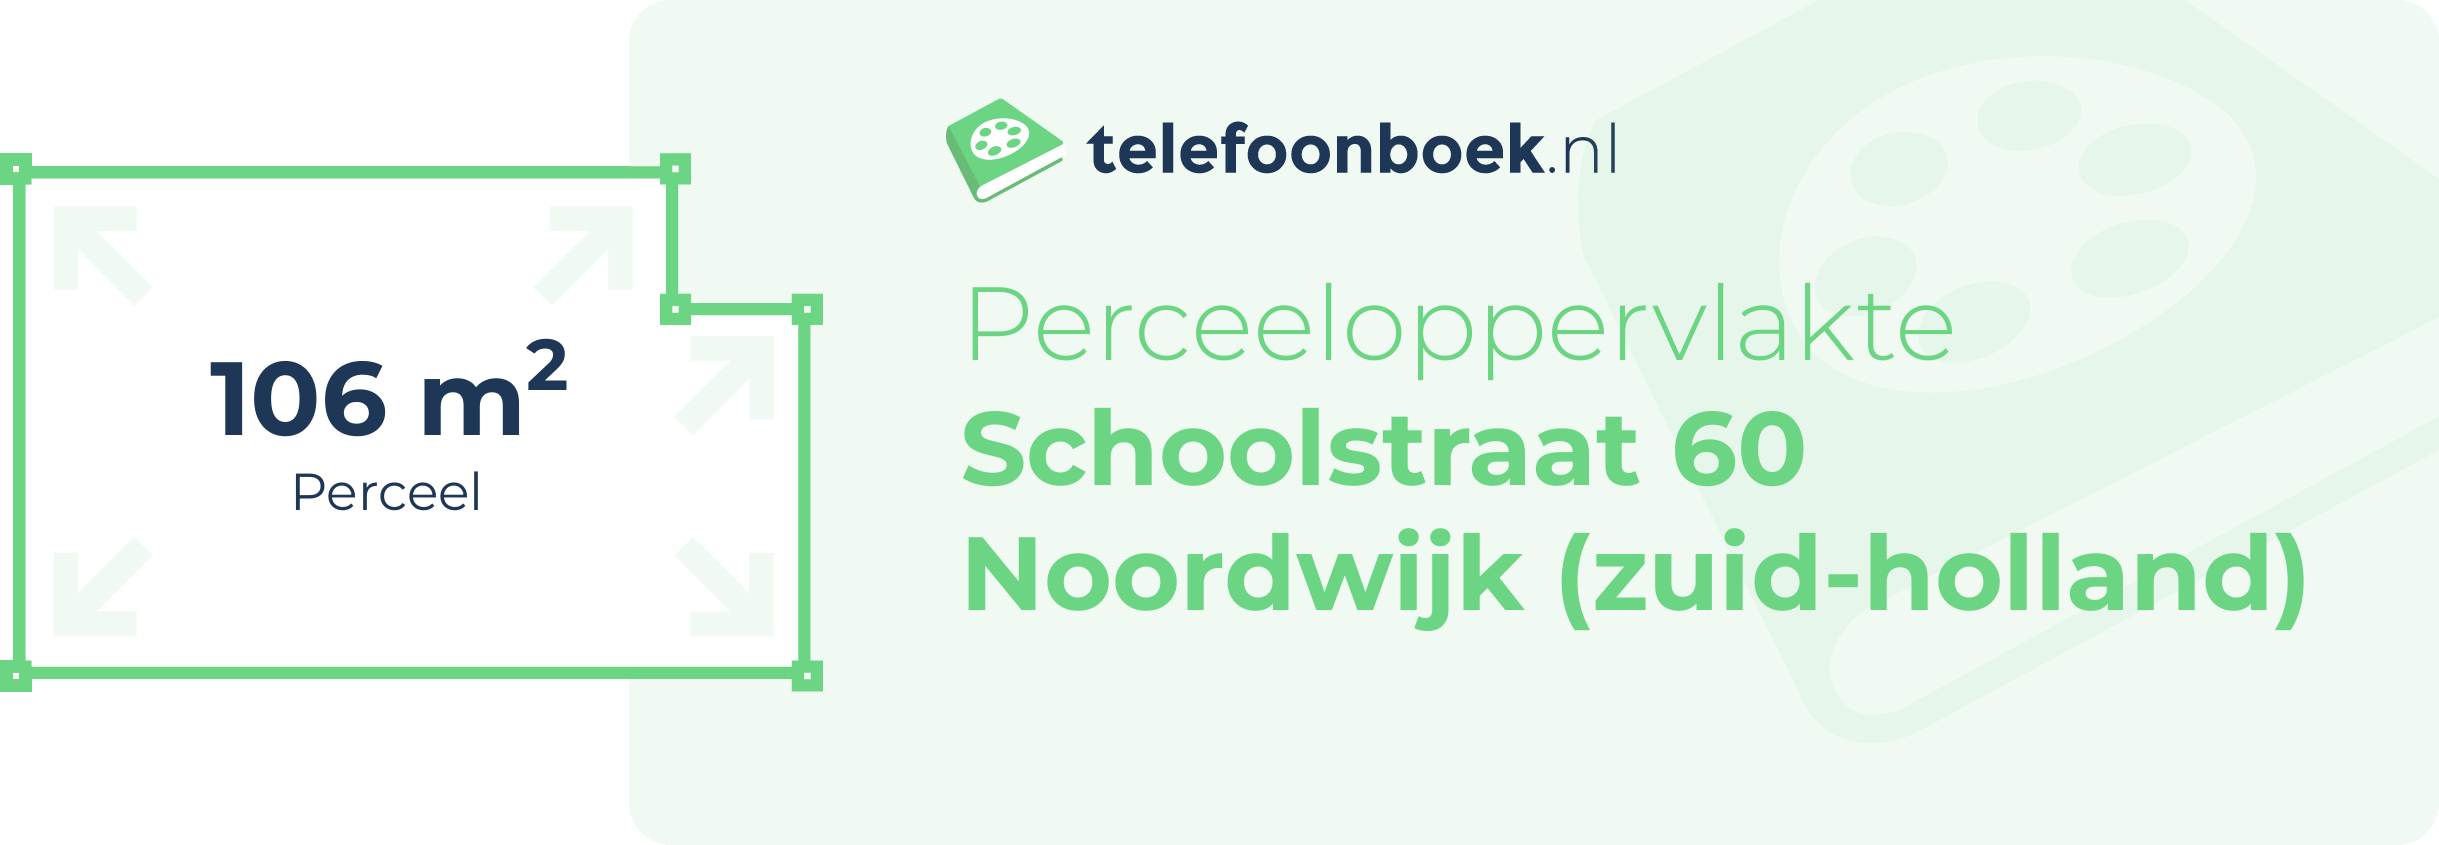 Perceeloppervlakte Schoolstraat 60 Noordwijk (Zuid-Holland)